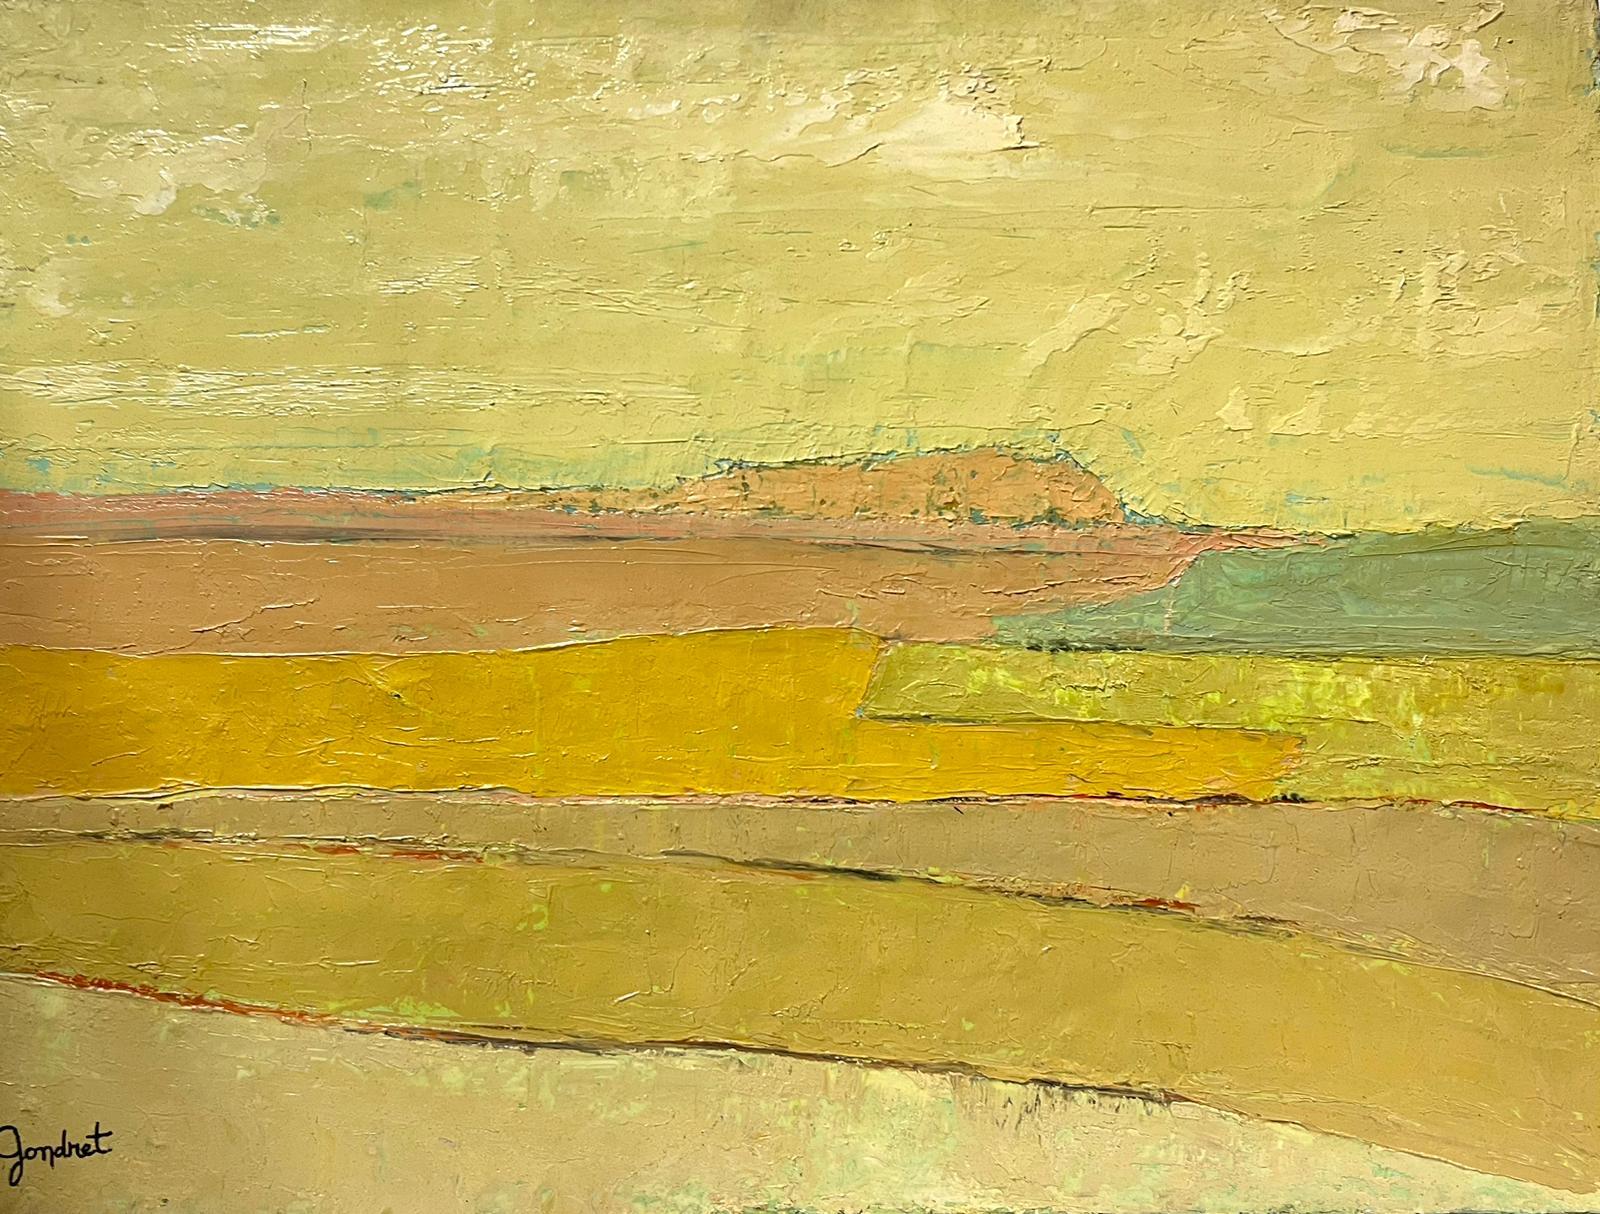 Lucien Gondret Abstract Painting – Französisch-modernistisches Ölgemälde des 20. Jahrhunderts, gelbes Landschaftsgemälde, kubistische Komposition